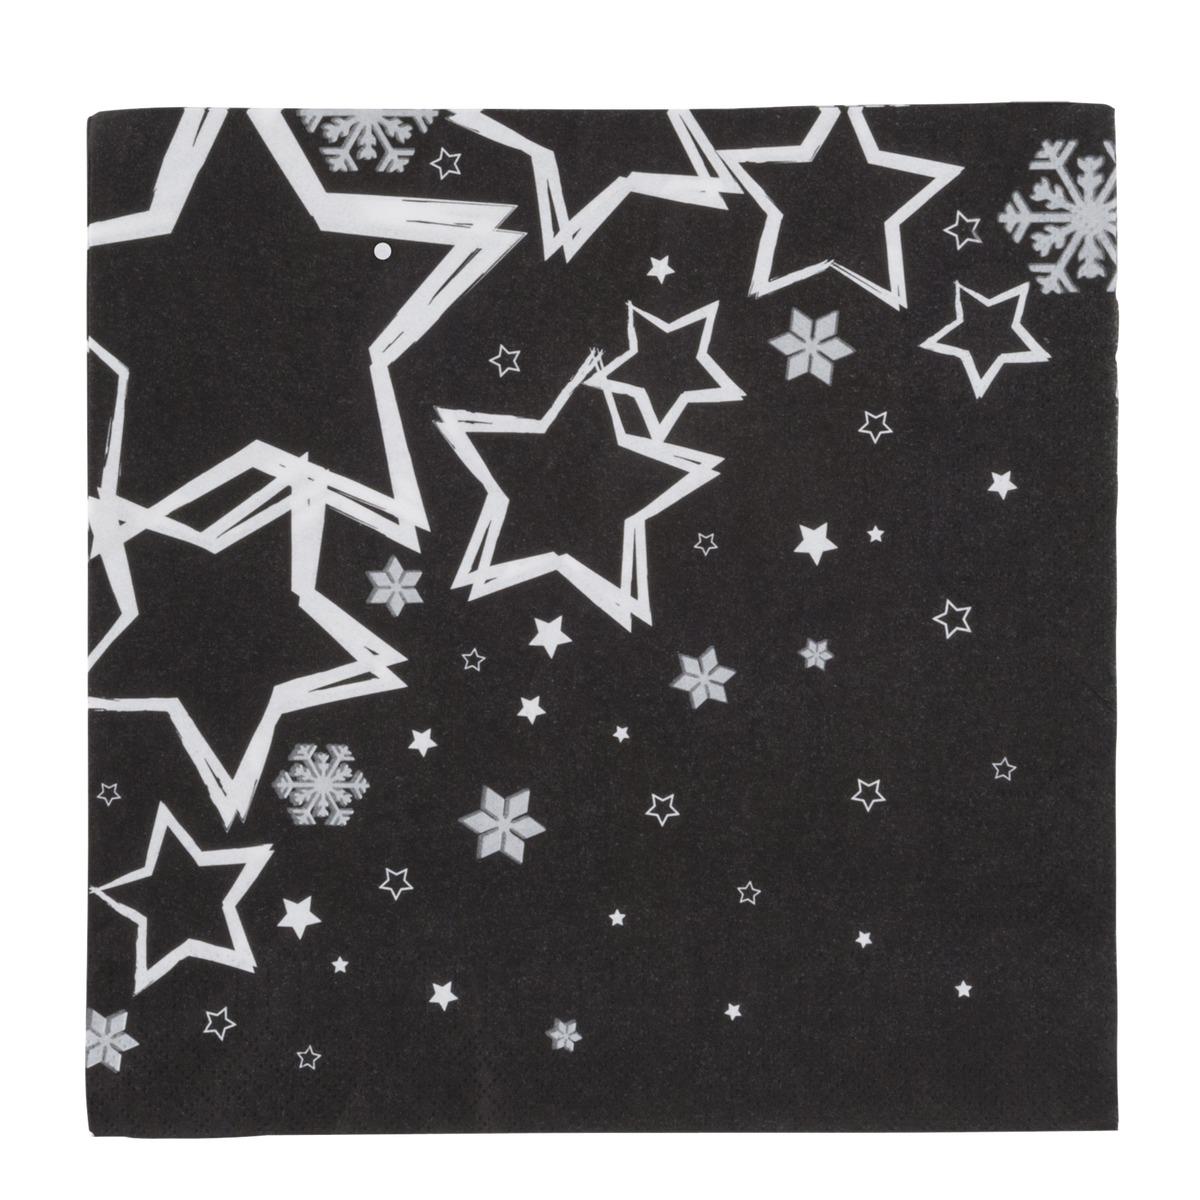 Lot de 20 serviettes en papier imprimé étoiles - 40 x 40 cm - Blanc et noir